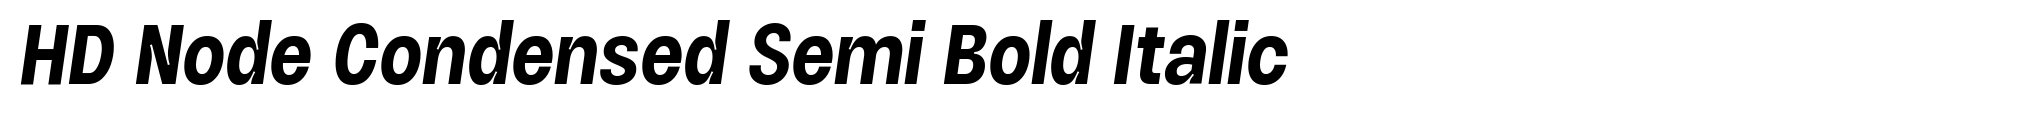 HD Node Condensed Semi Bold Italic image